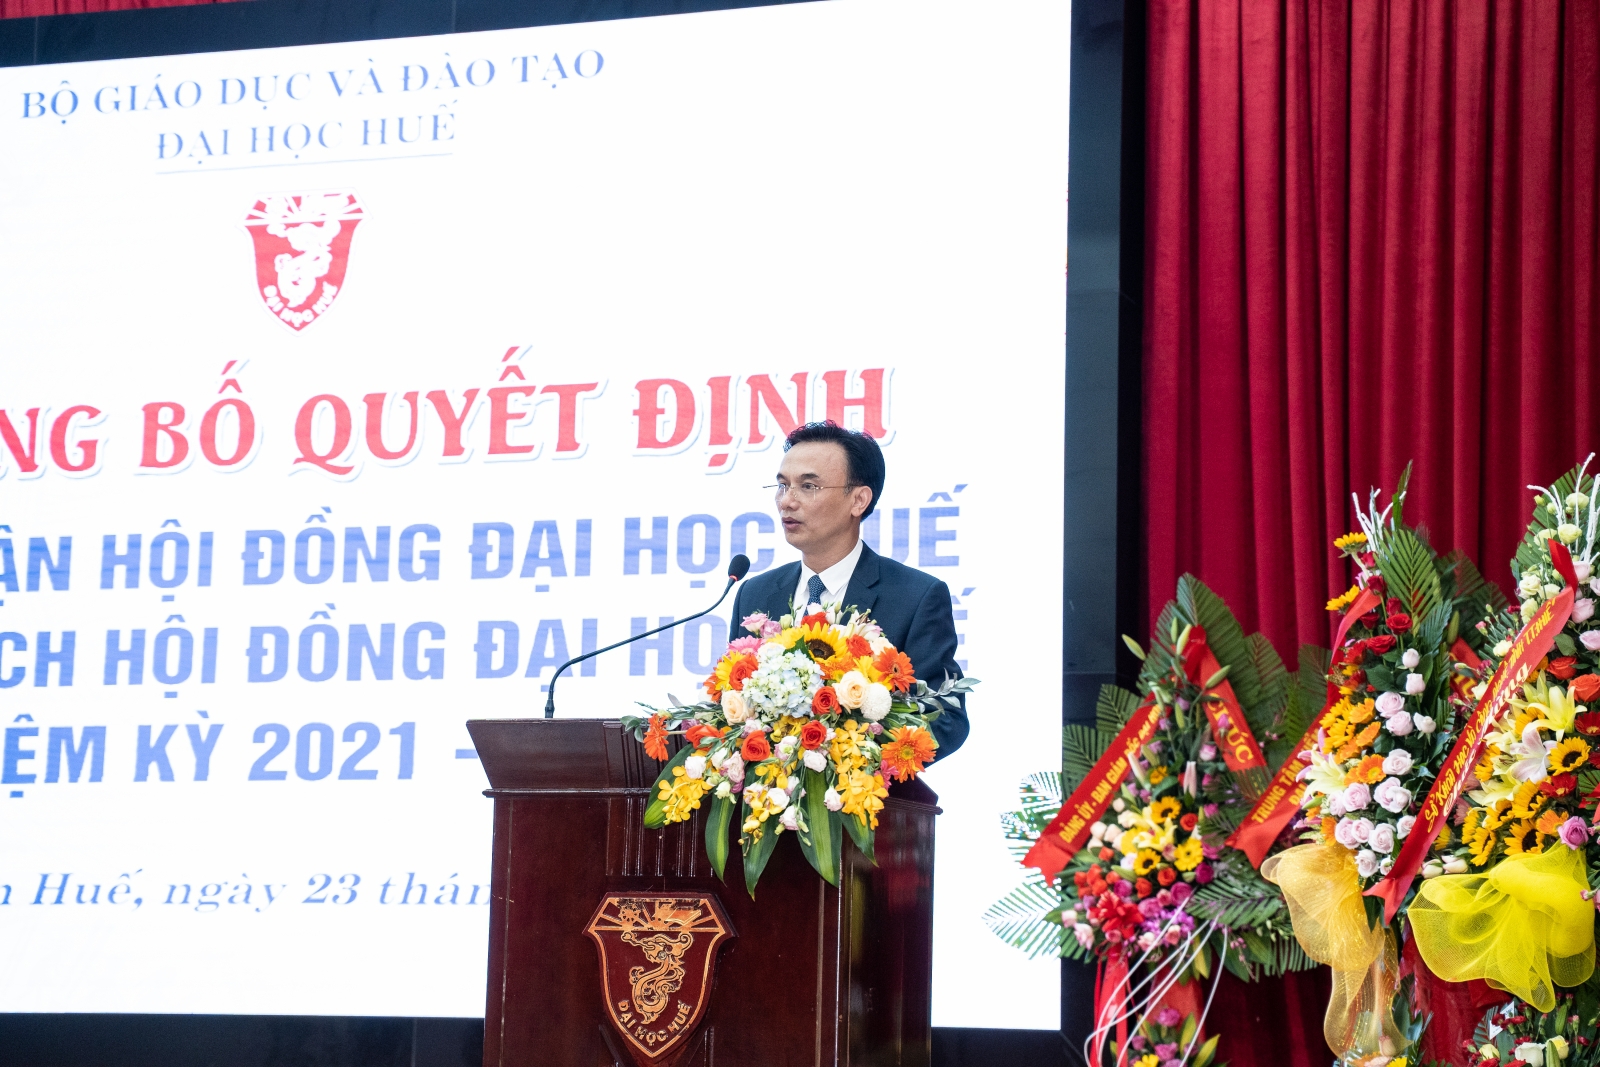 PGS.TS Huỳnh Văn Chương làm Chủ tịch Hội đồng Đại học Huế - Ảnh minh hoạ 2